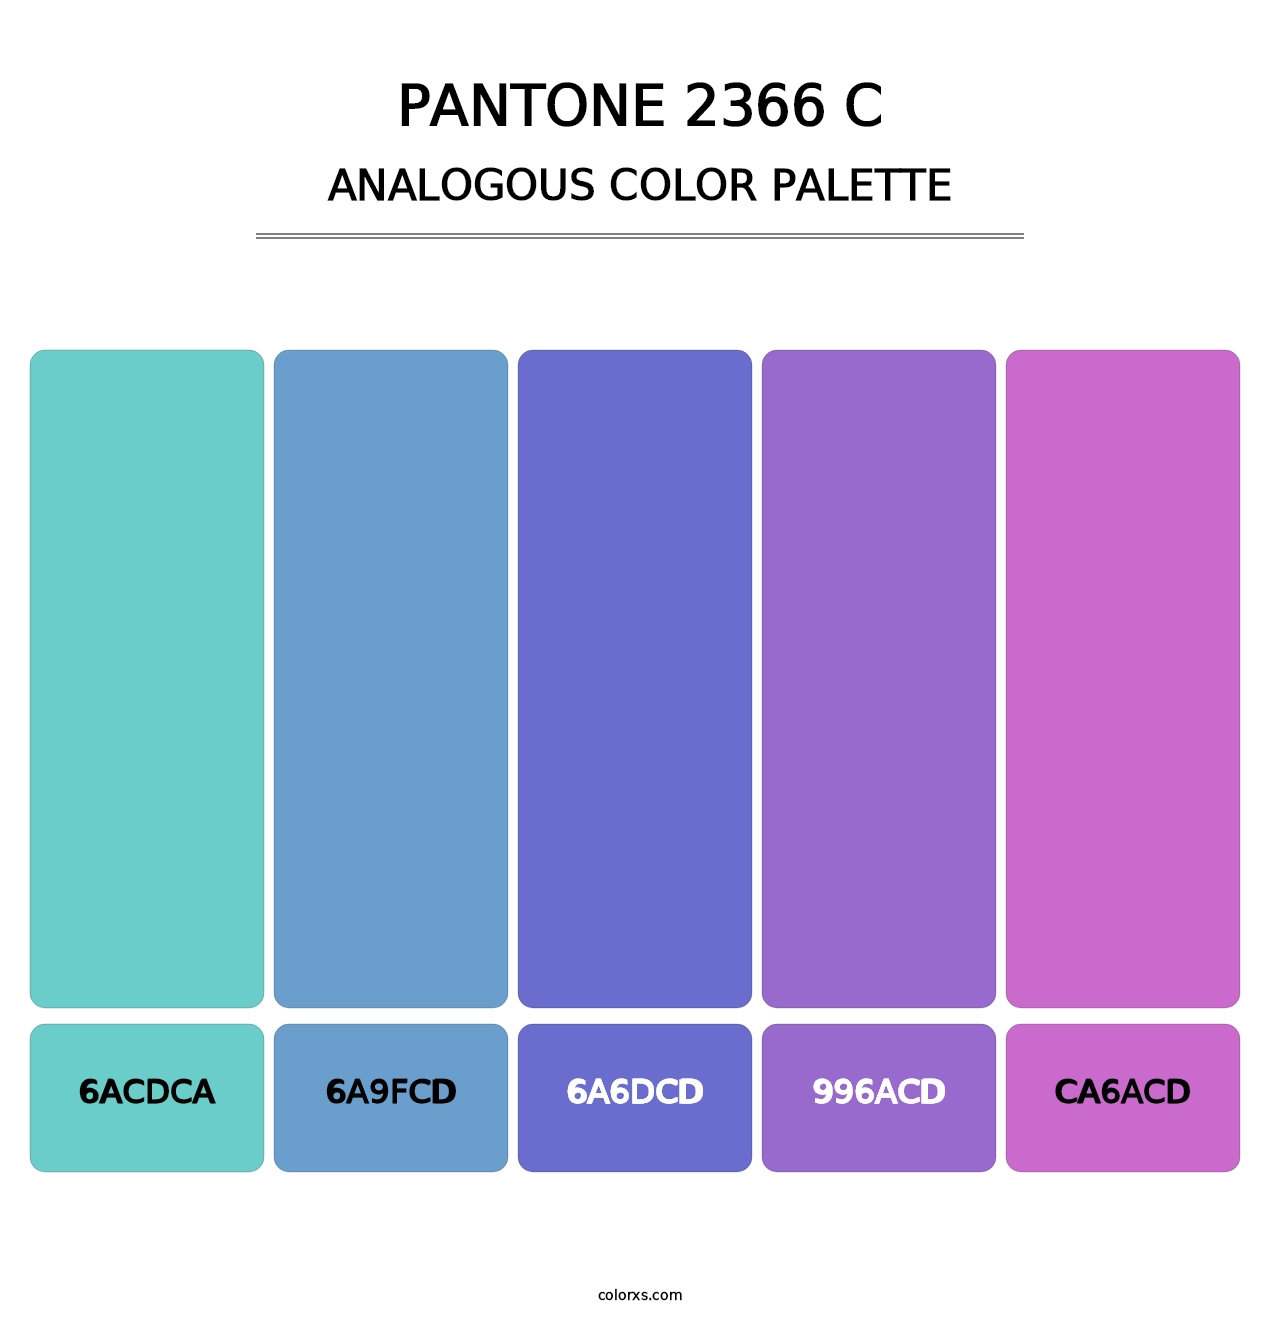 PANTONE 2366 C - Analogous Color Palette